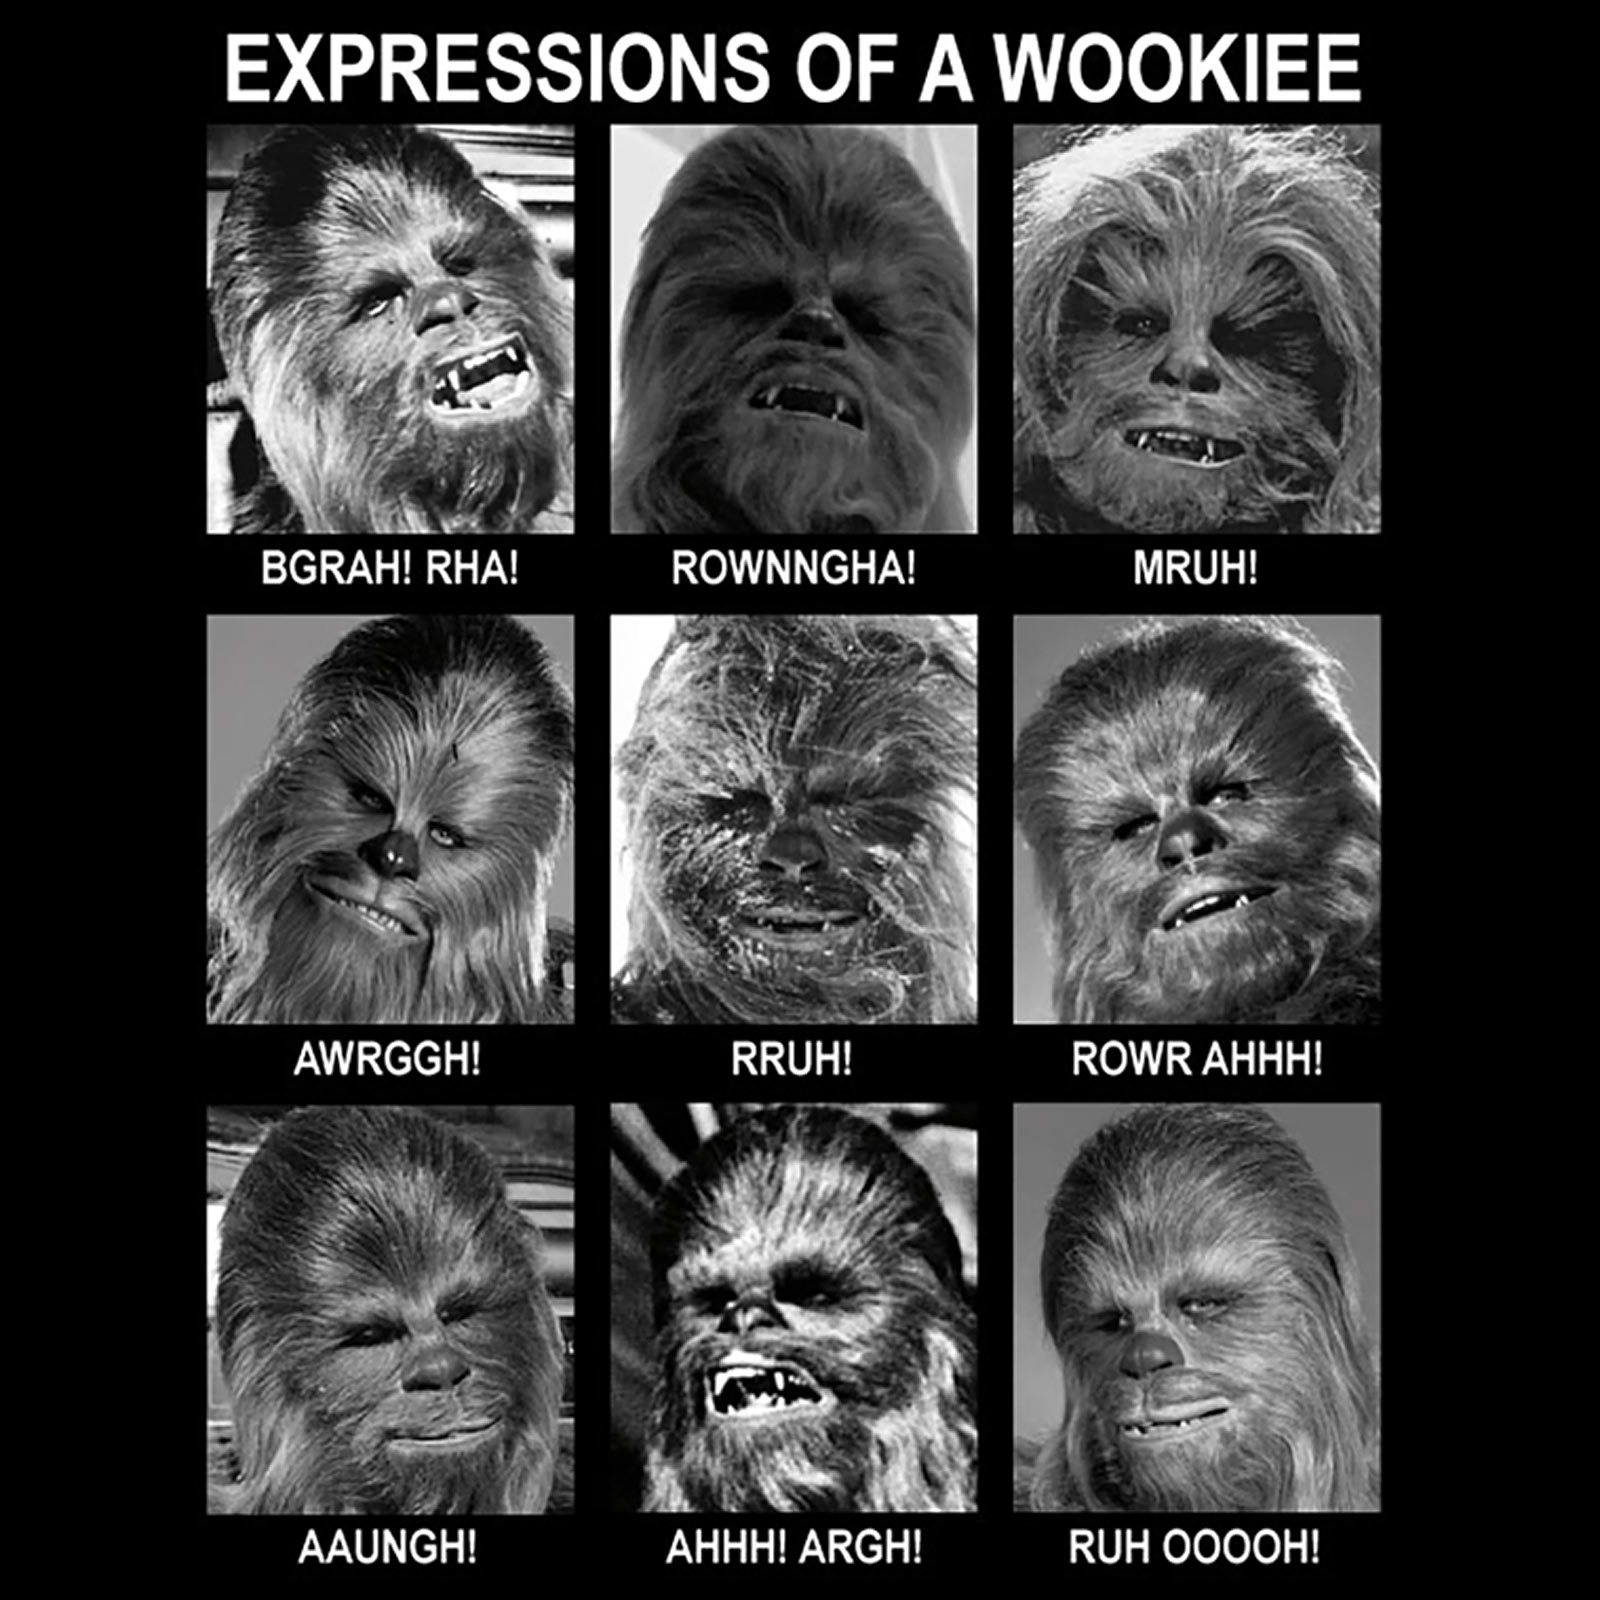 Star Wars - Wookiee Expressions T-Shirt schwarz